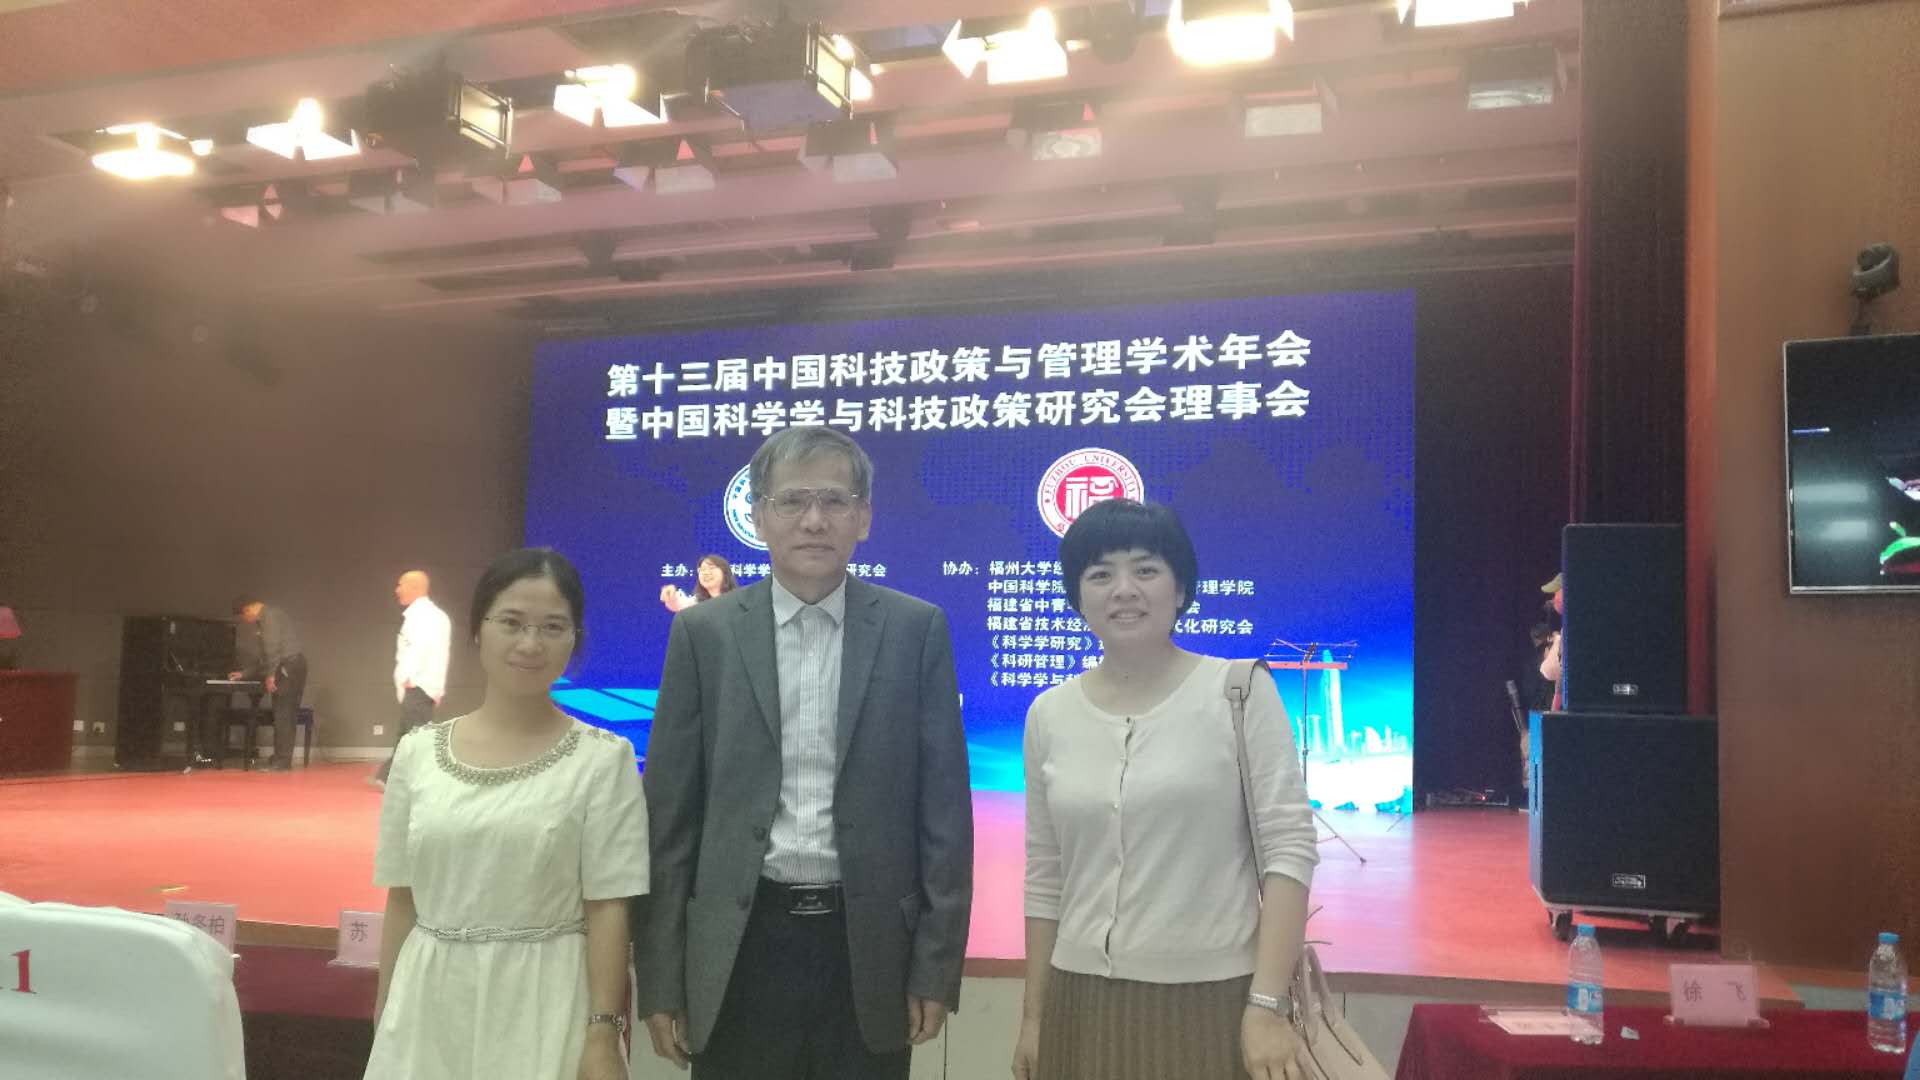 我院研究人员参加中国科技政策与管理学术年会